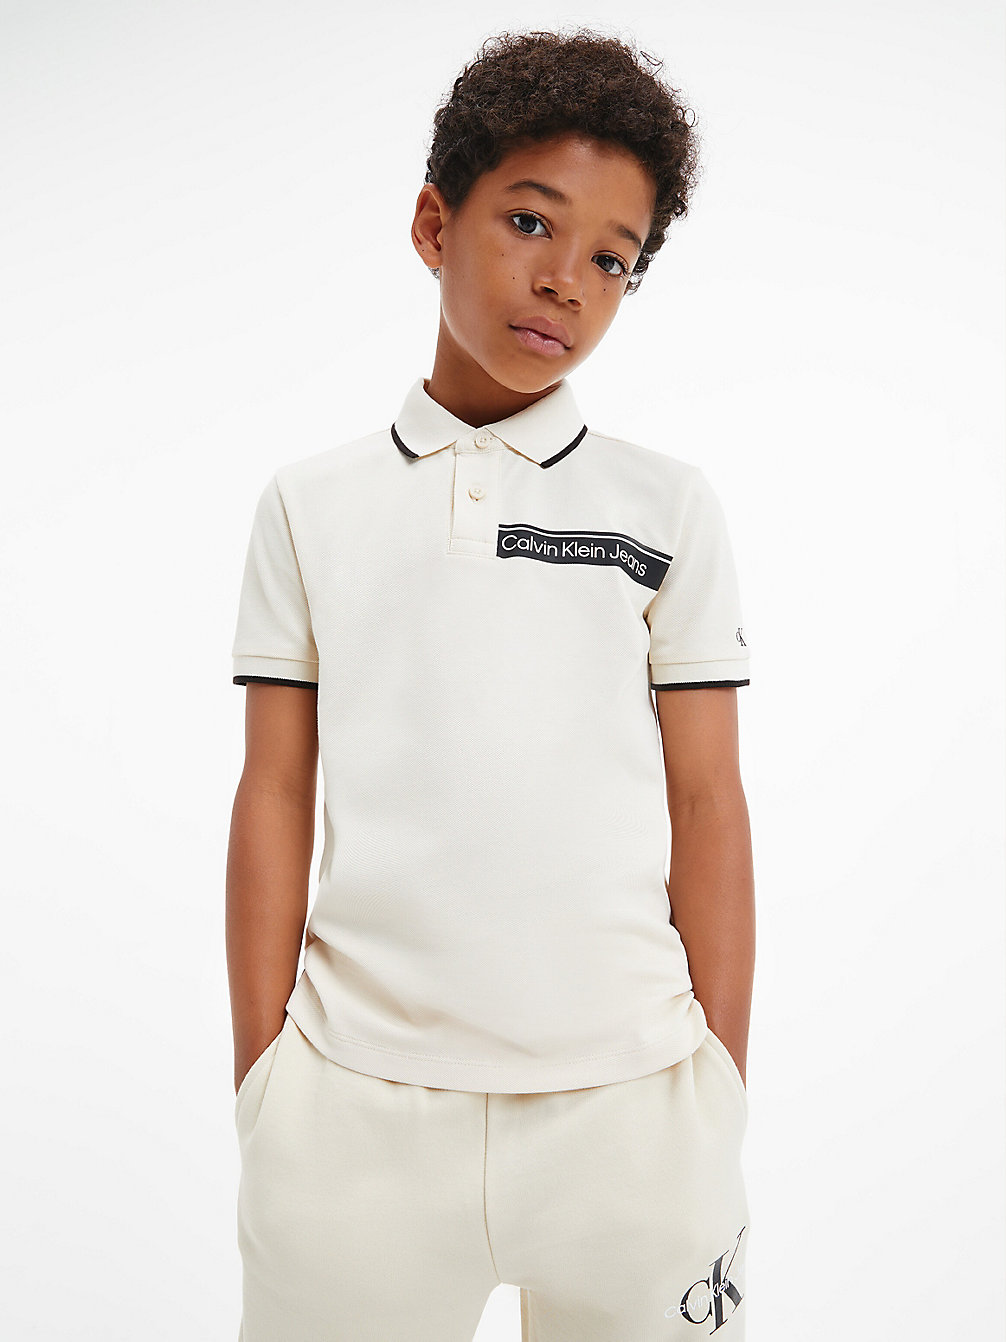 MUSLIN > Koszulka Polo Z Logo > undefined boys - Calvin Klein